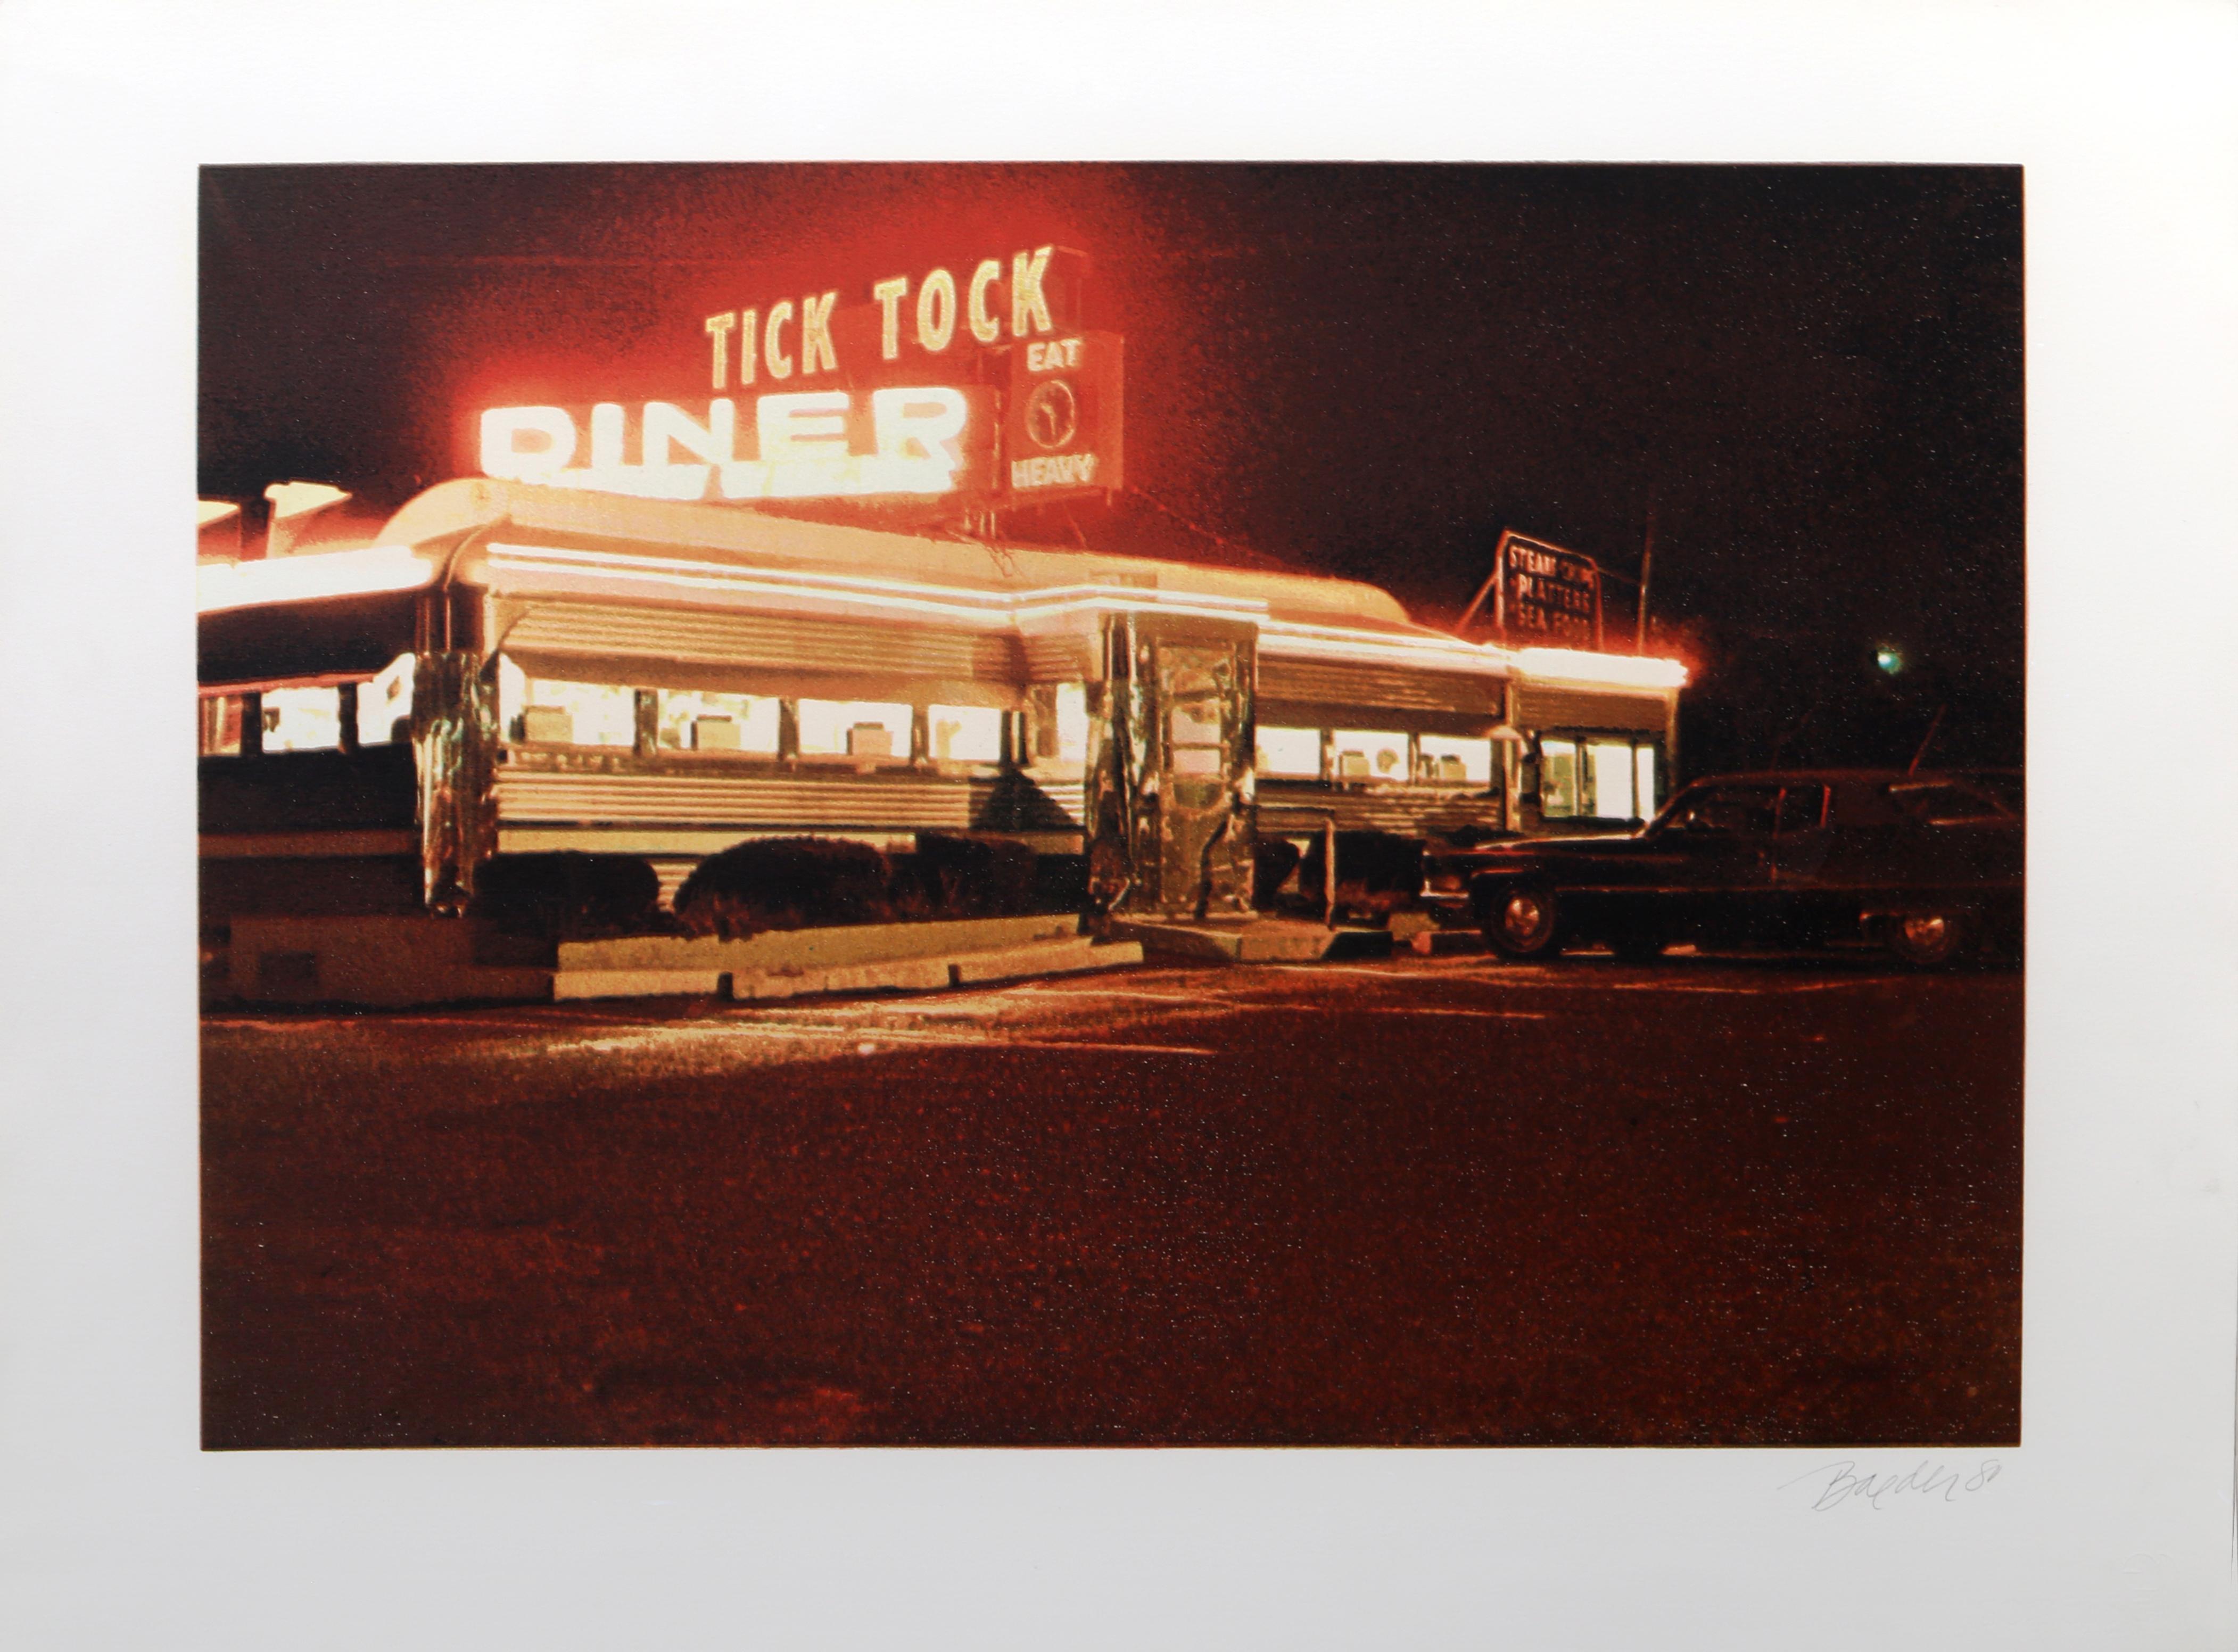 Künstler: John Baeder, Amerikaner (1938 - )
Titel: Tick Tock Diner
Jahr: 1980
Medium: Siebdruck, signiert und nummeriert mit Bleistift
Auflage: 250
Größe: 22 x 30 Zoll (55,88 x 76,2 cm)